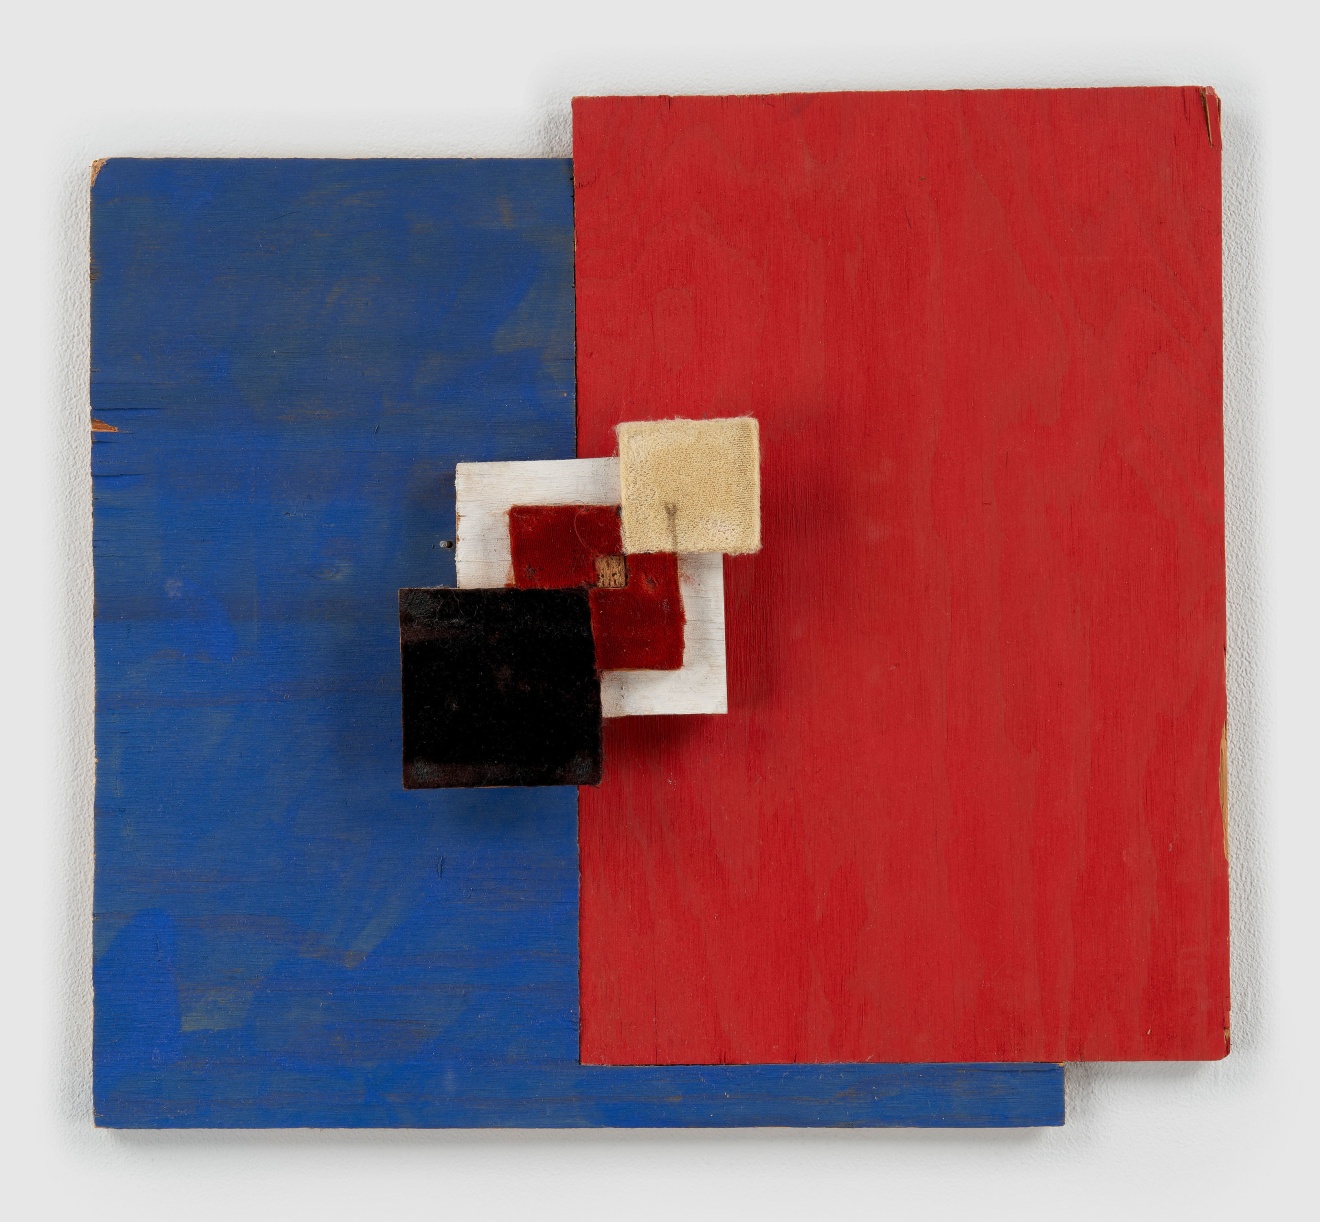 Richard Tuttle, Blue/Red - Velvet Squares, 2003